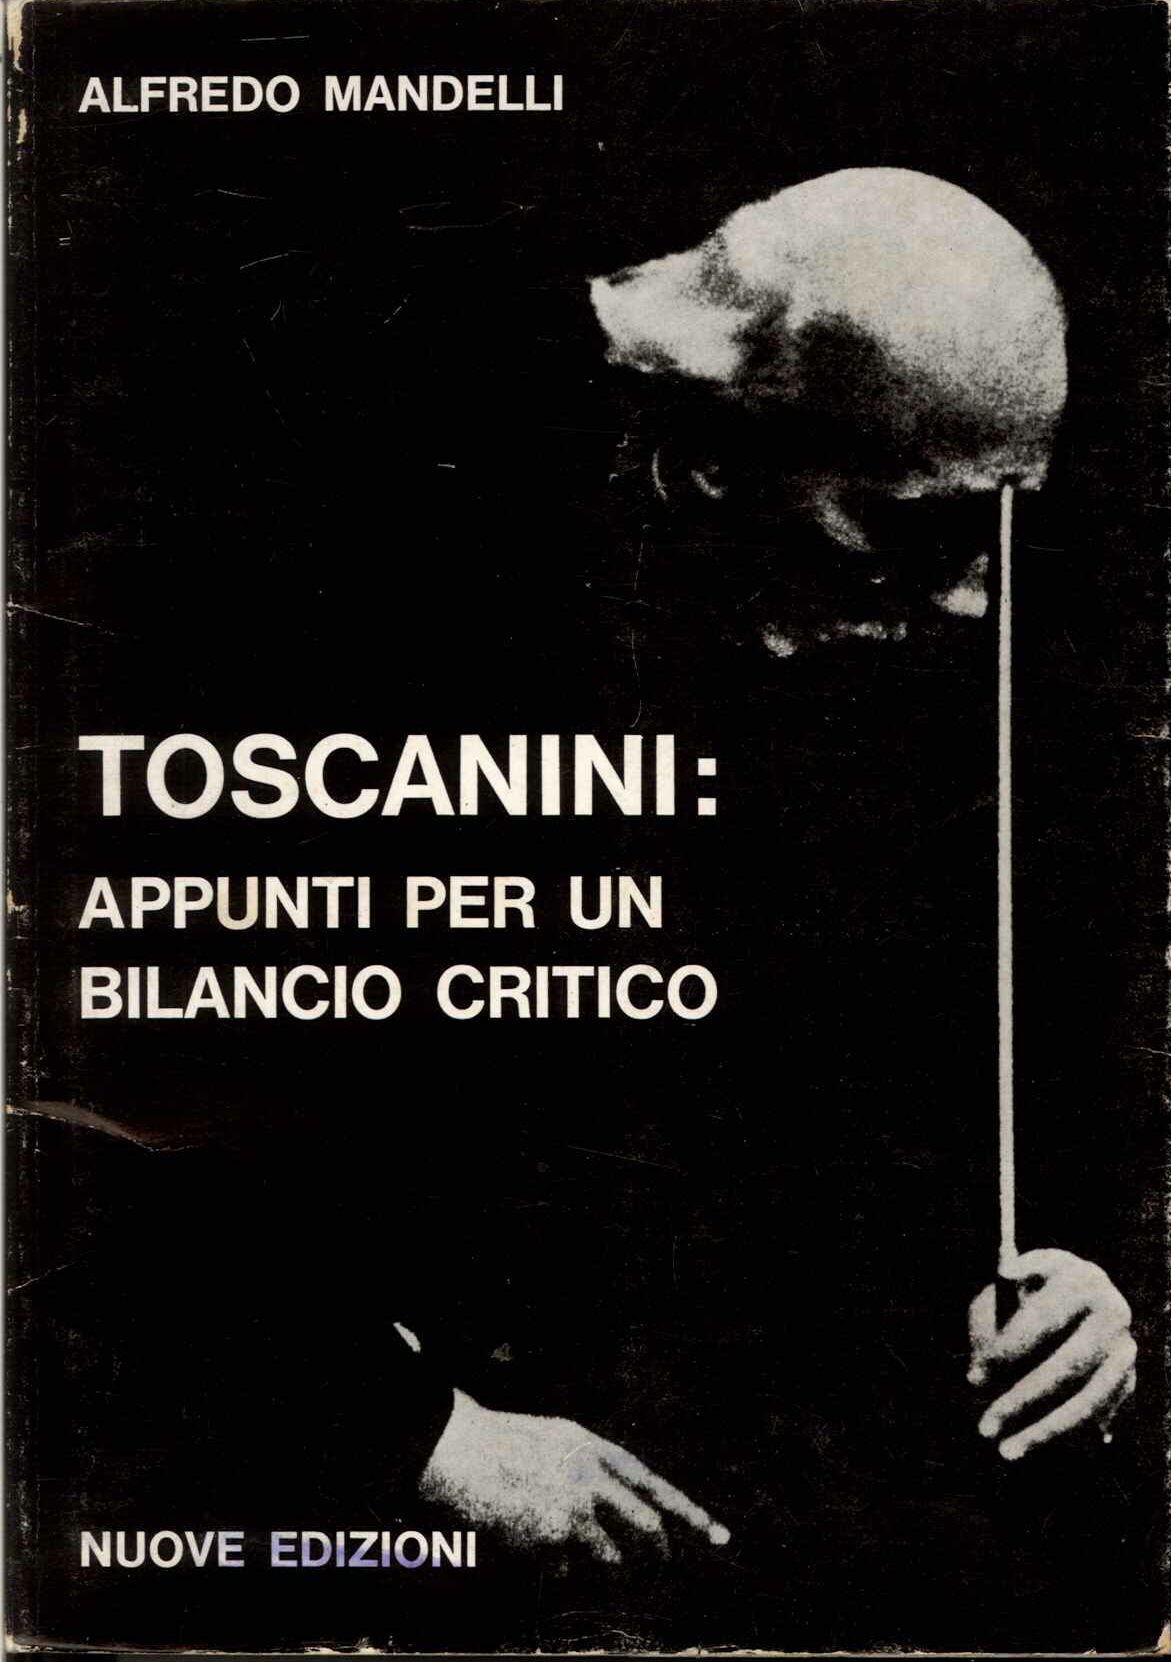 Toscanini: ppunti per un bilancio critico